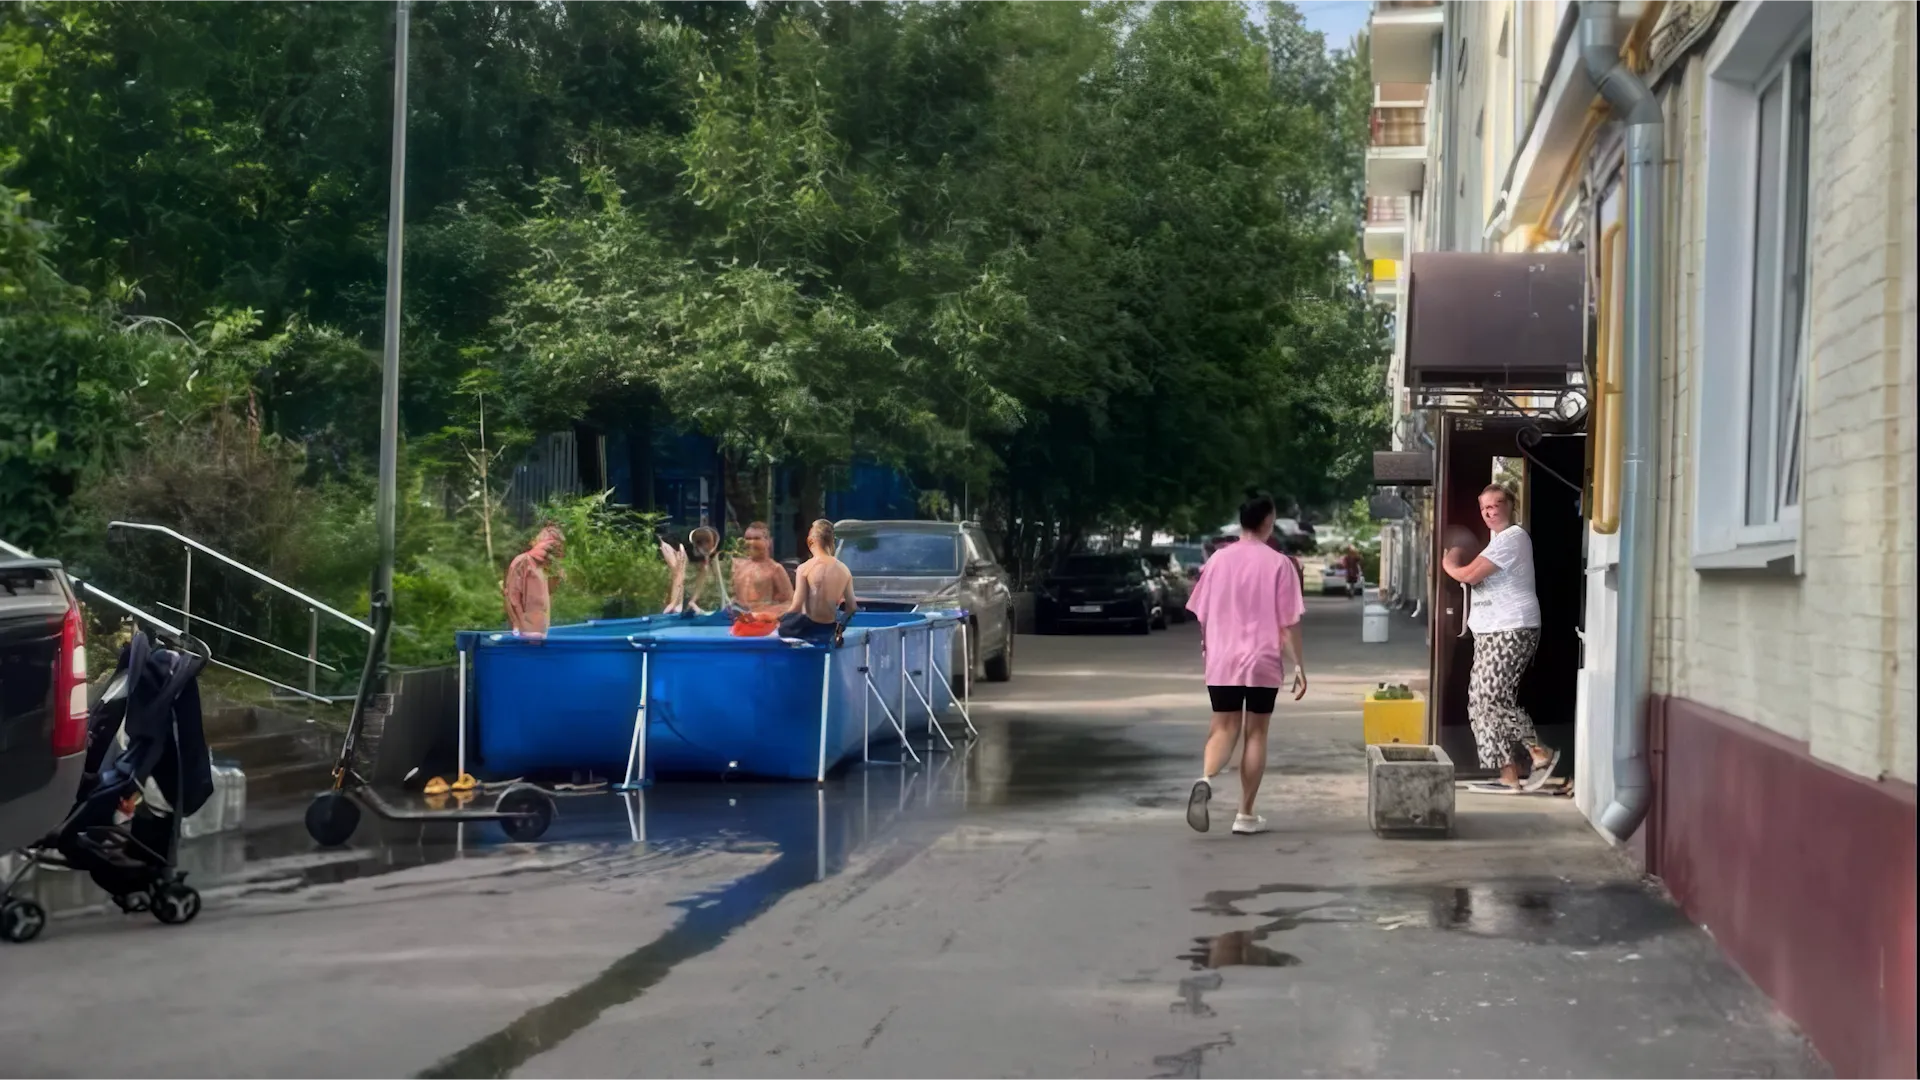 Визги и занятая парковка: Каркасный бассейн в московском дворе стал яблоком раздора между жильцами